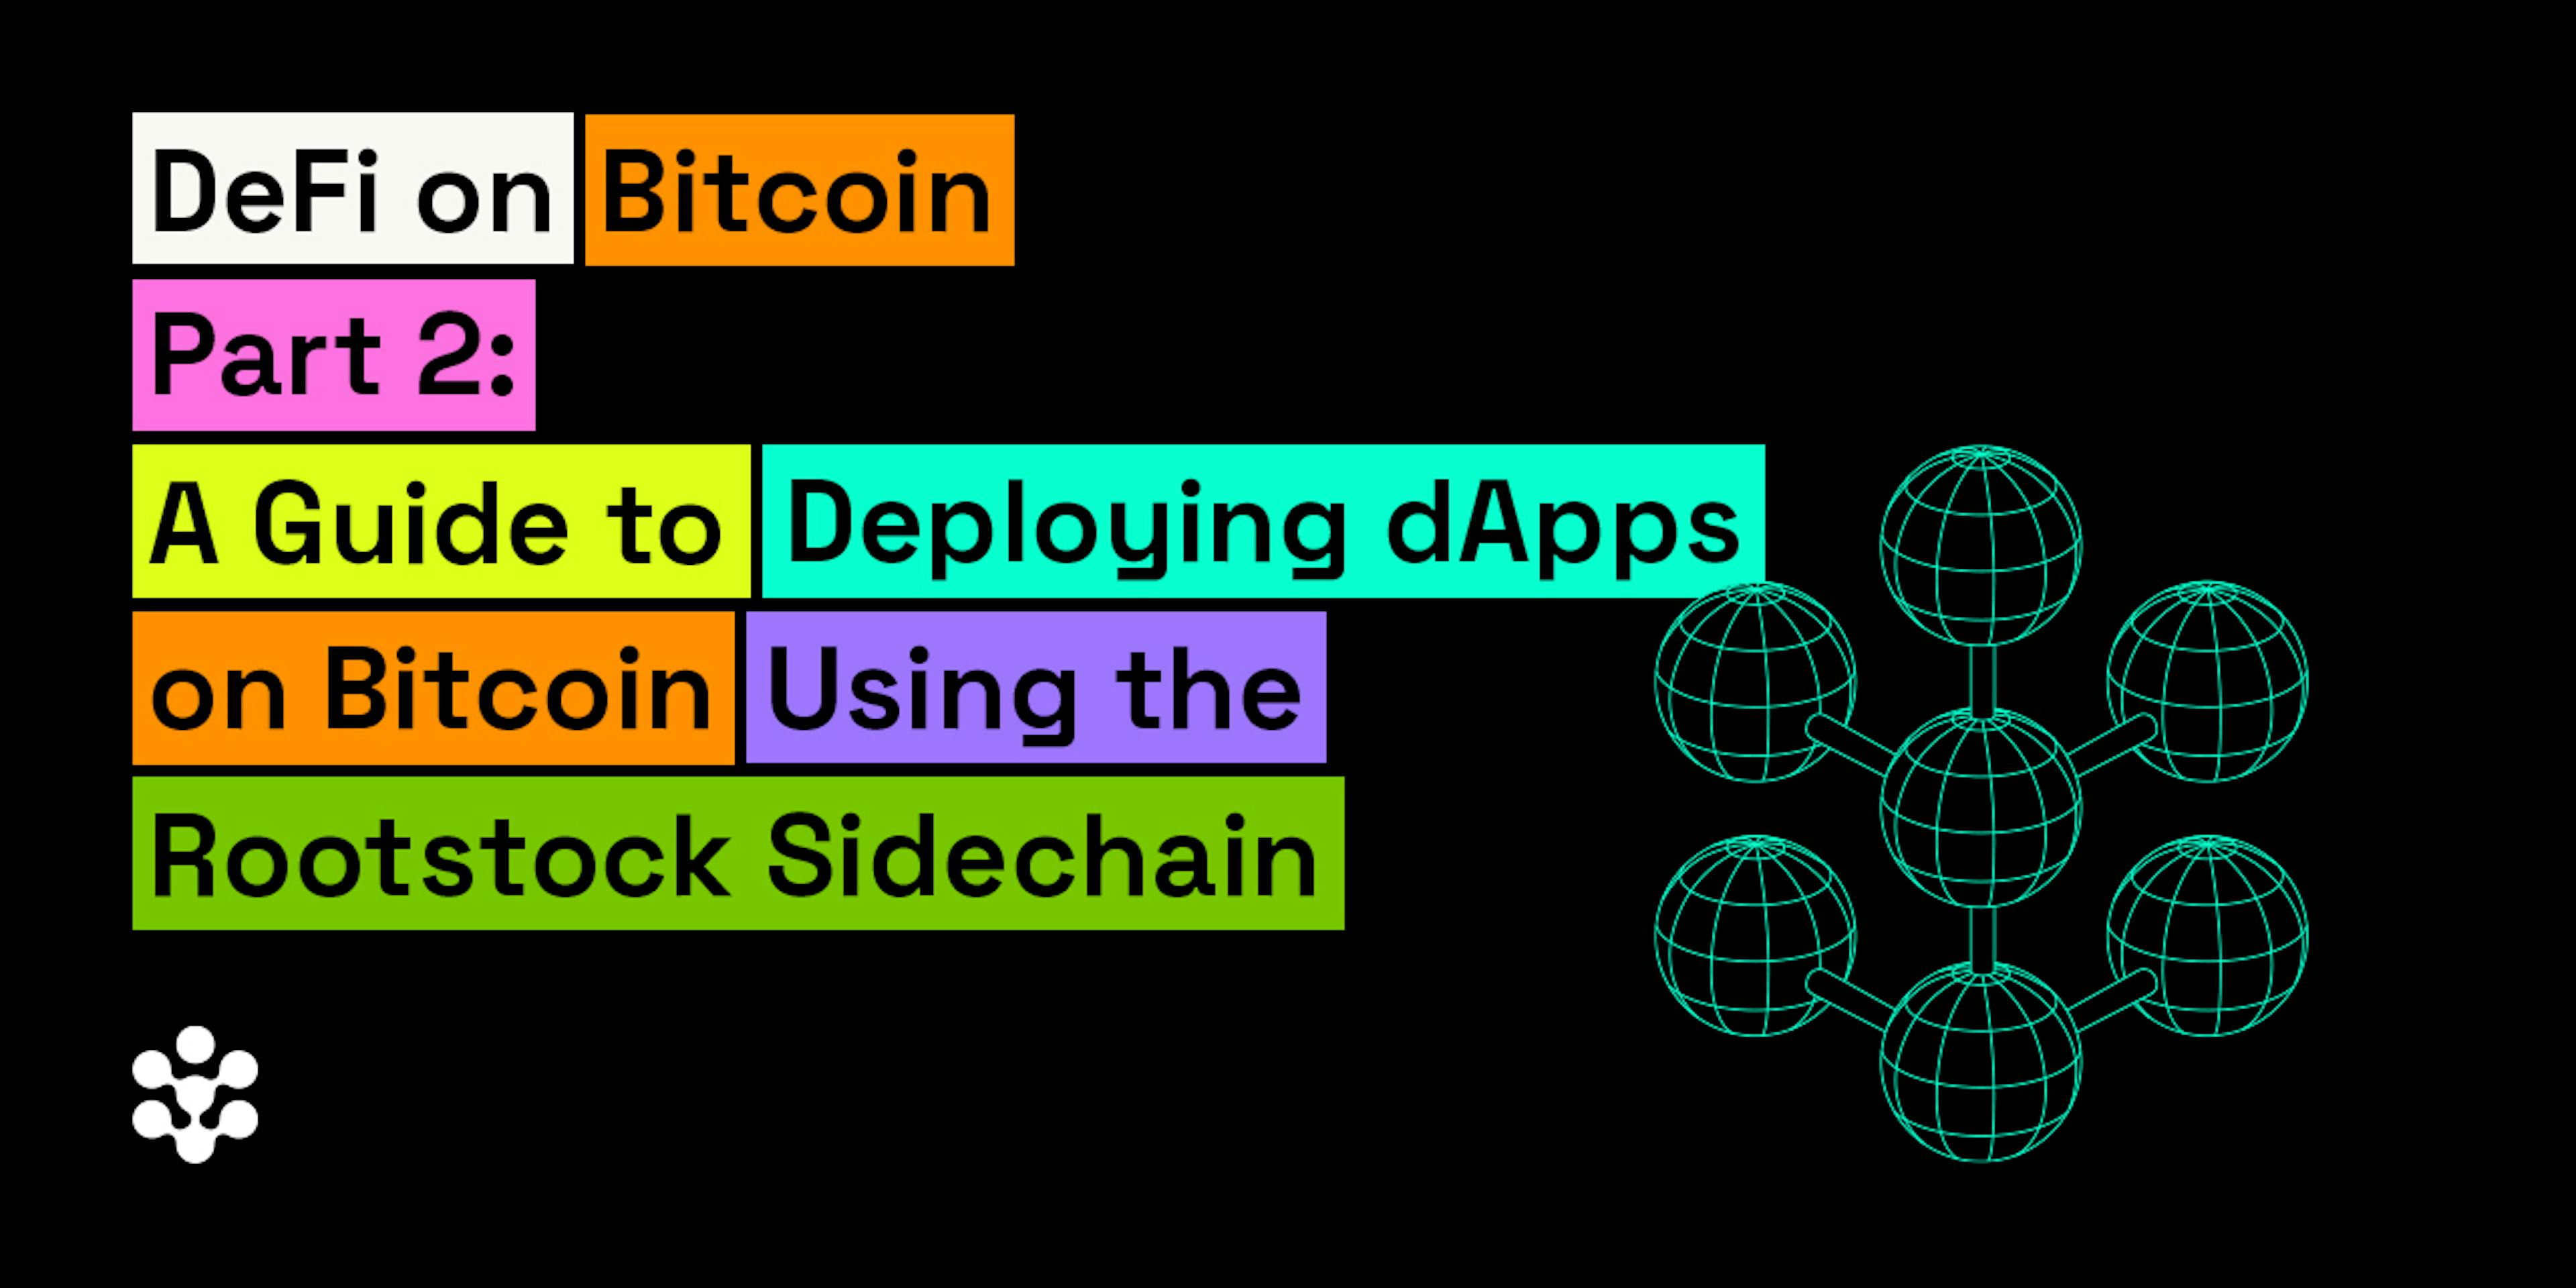 featured image - DeFi em Bitcoin Parte 2: Como implantar DApps em Bitcoin usando Rootstock Sidechain